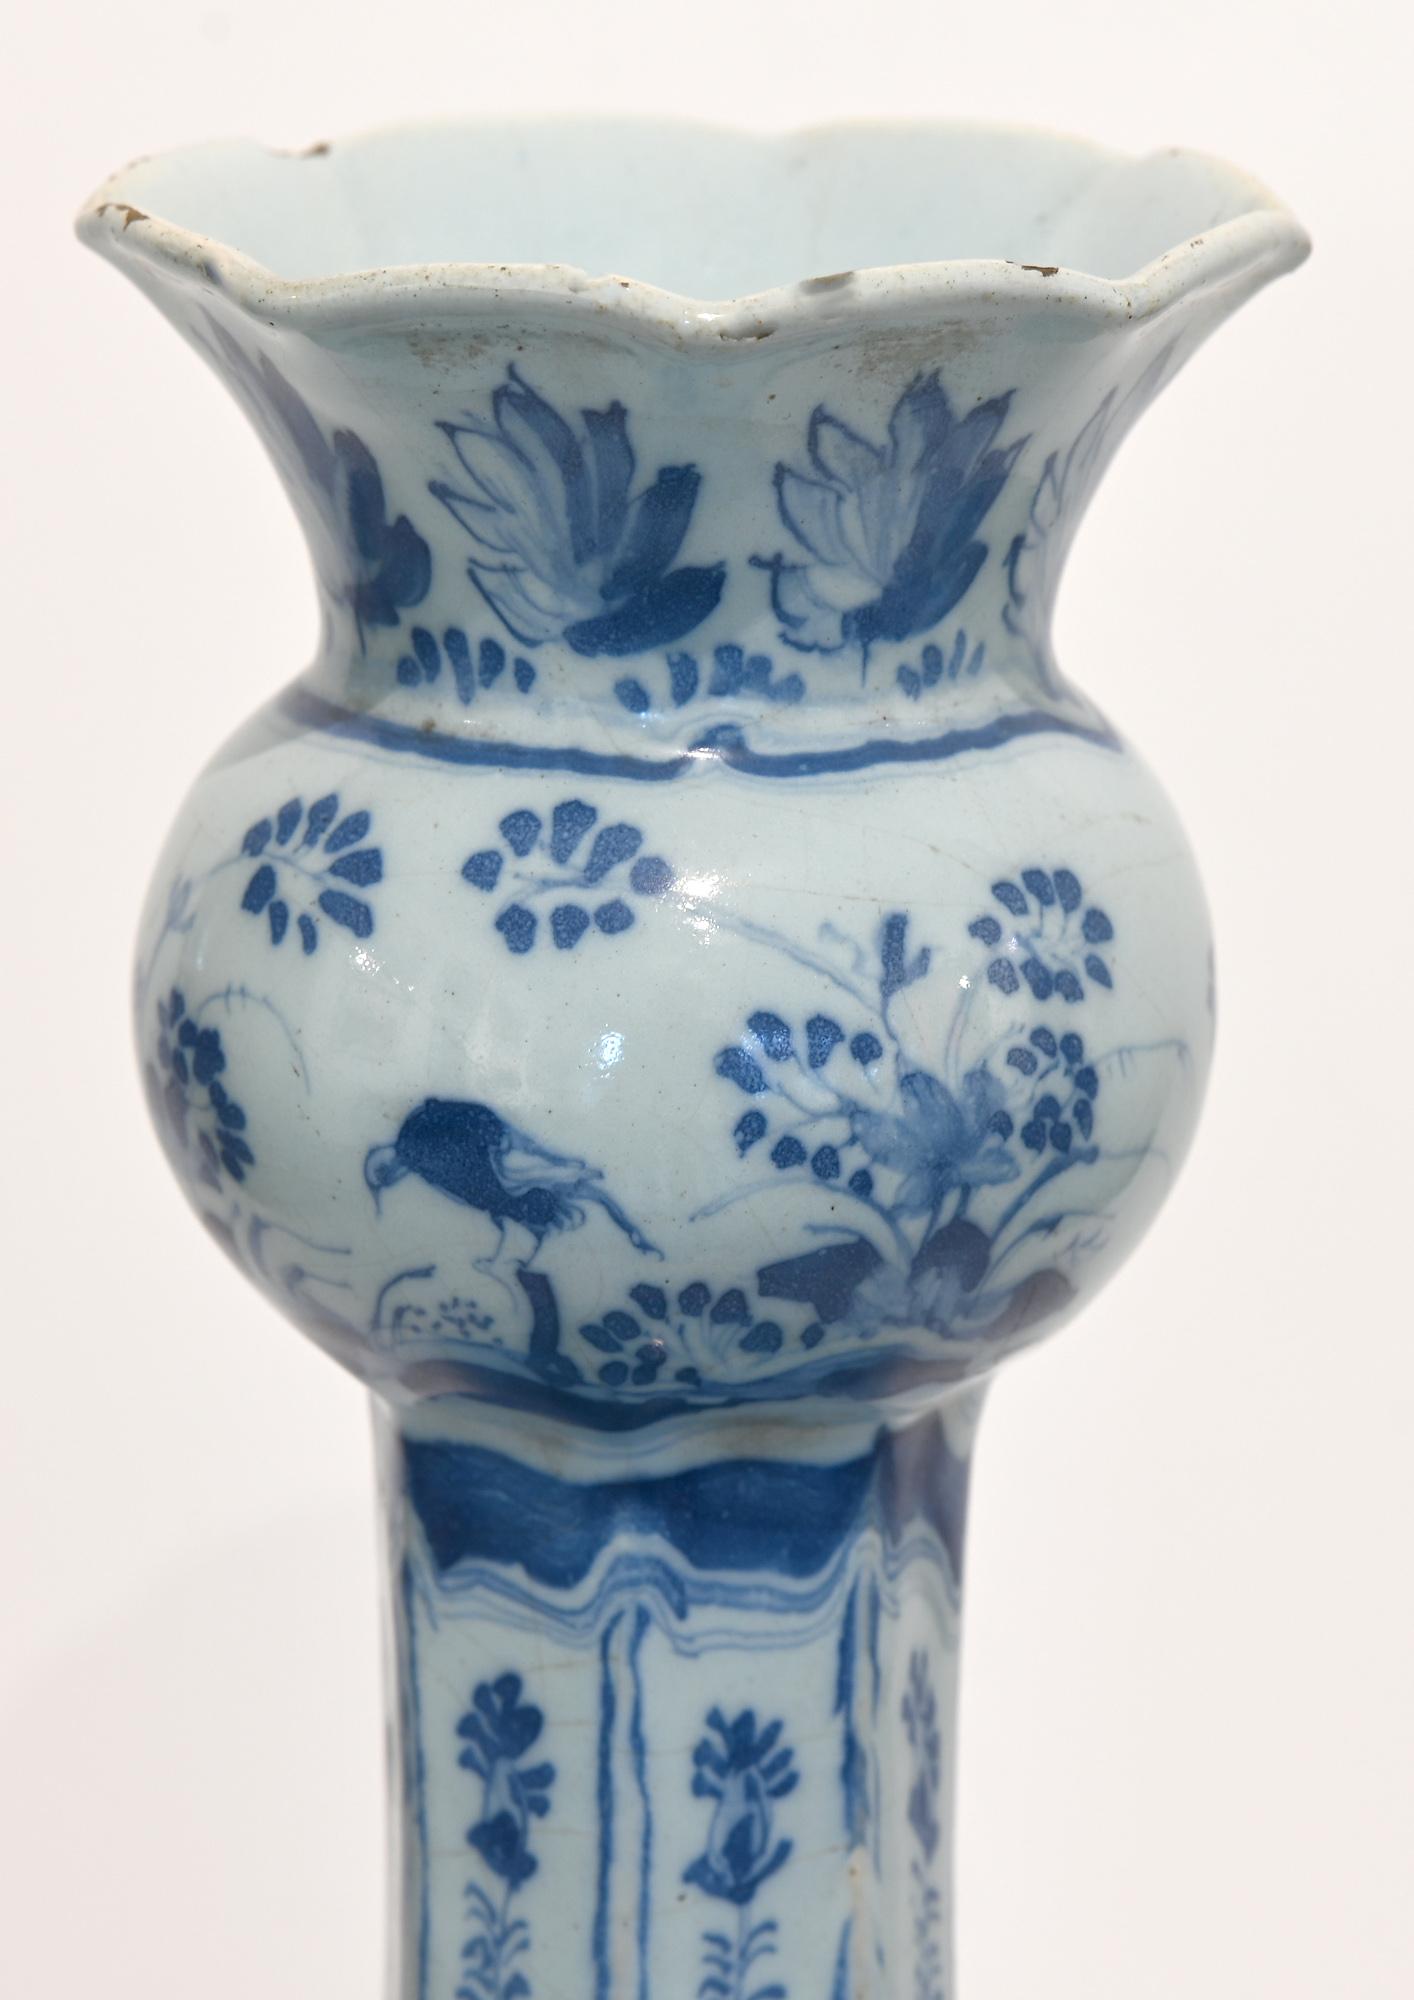 Sie sehen eine sehr schöne Delfter Vase in einer besonderen Form. Es ist sehr schön mit Pflanzen und Vögeln bemalt.
Die Vase stammt aus den Niederlanden, ca. 1750-1760.
       